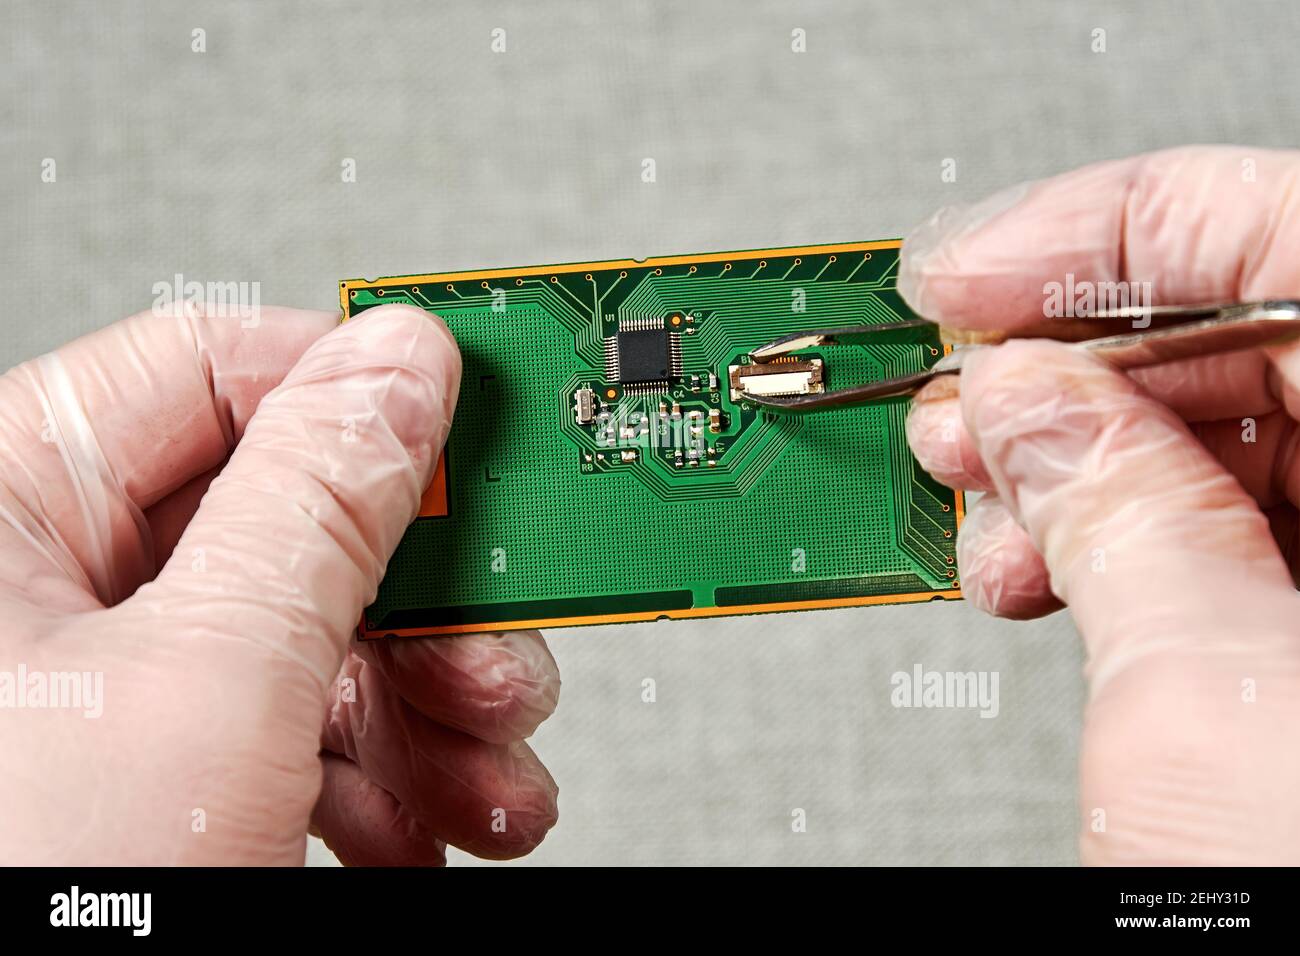 Un ingénieur équipé de pinces à épiler répare le circuit imprimé avec une petite puce. Concept des procédés de fabrication Banque D'Images